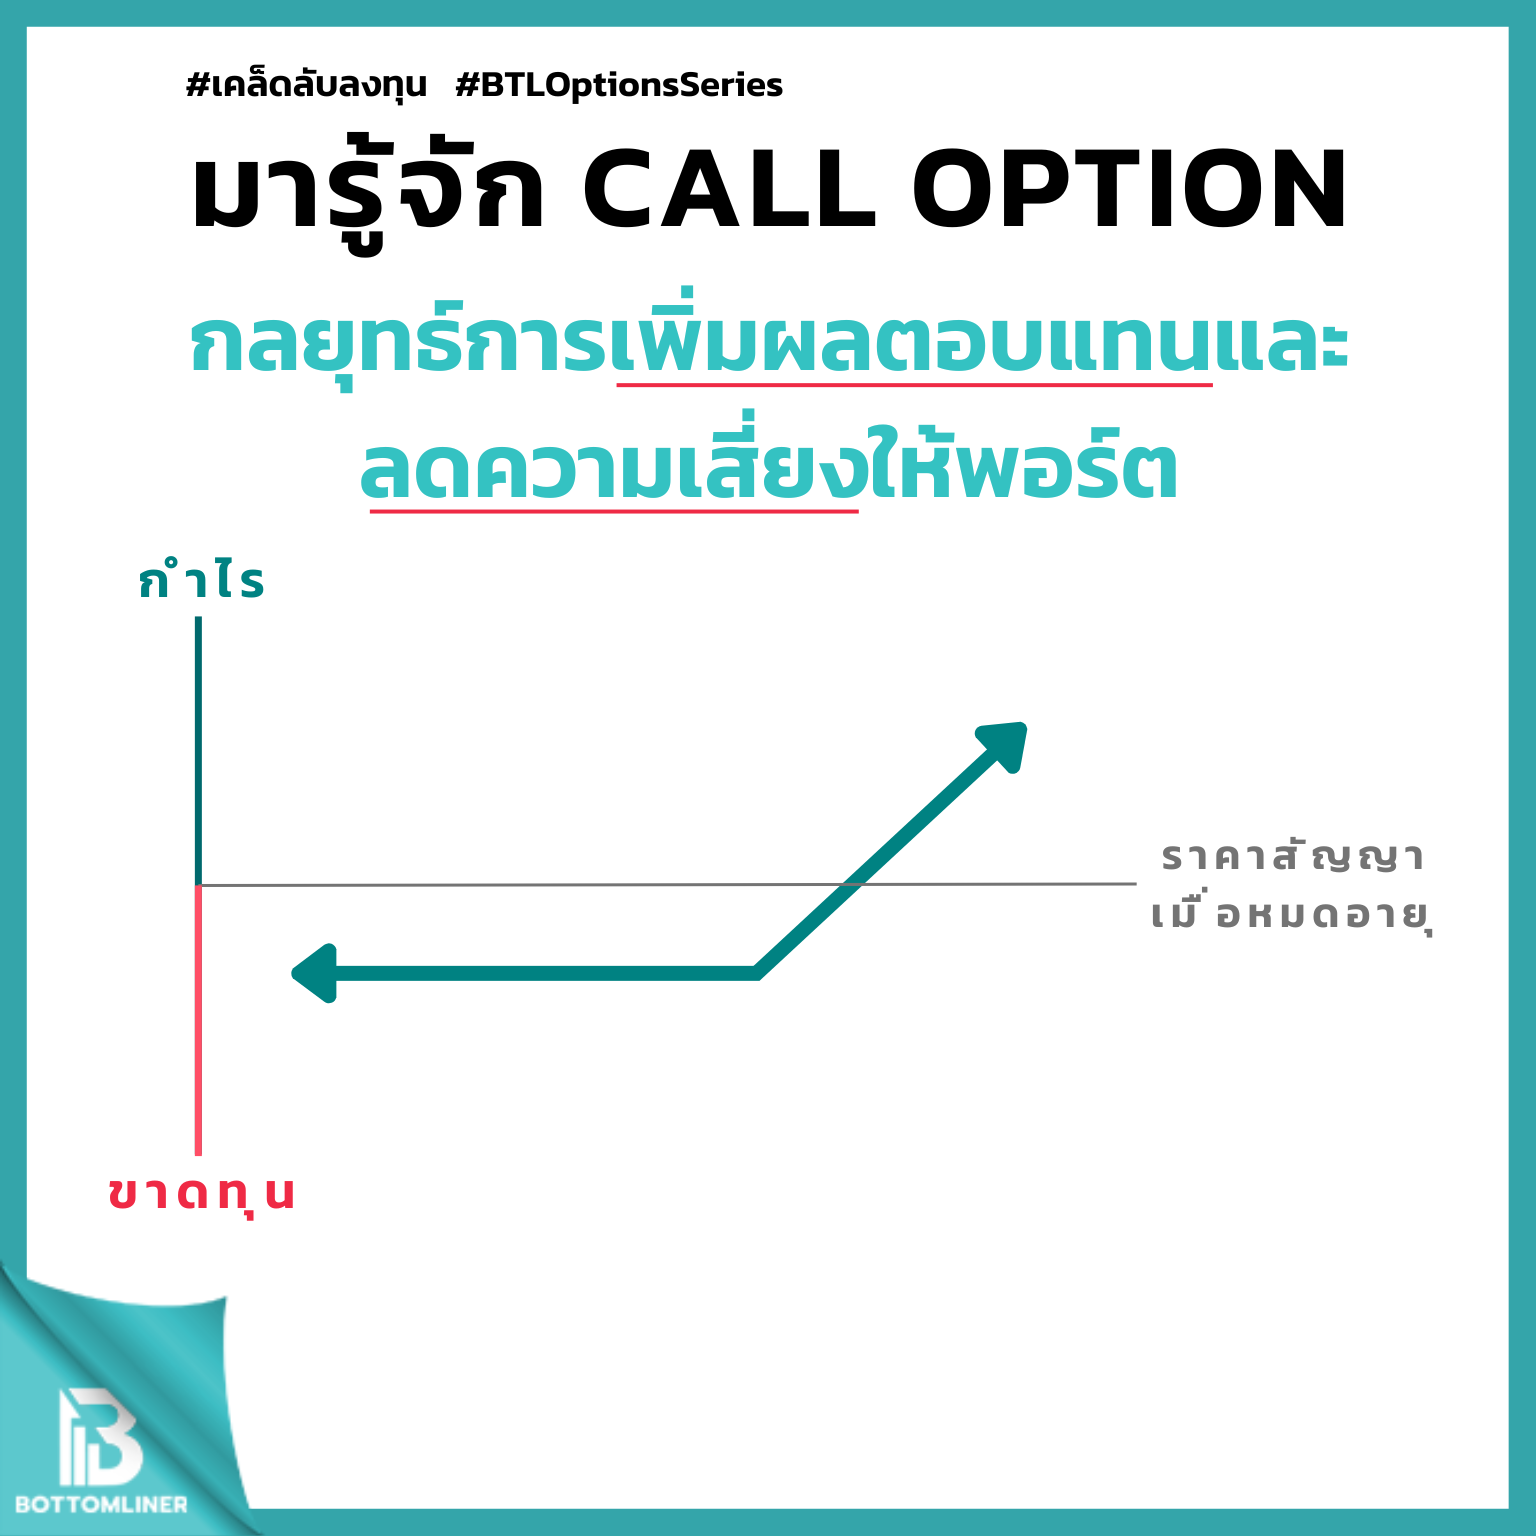 มารู้จัก Call Option กลยุทธ์การเพิ่มผลตอบแทนและลดความเสี่ยงให้พอร์ต